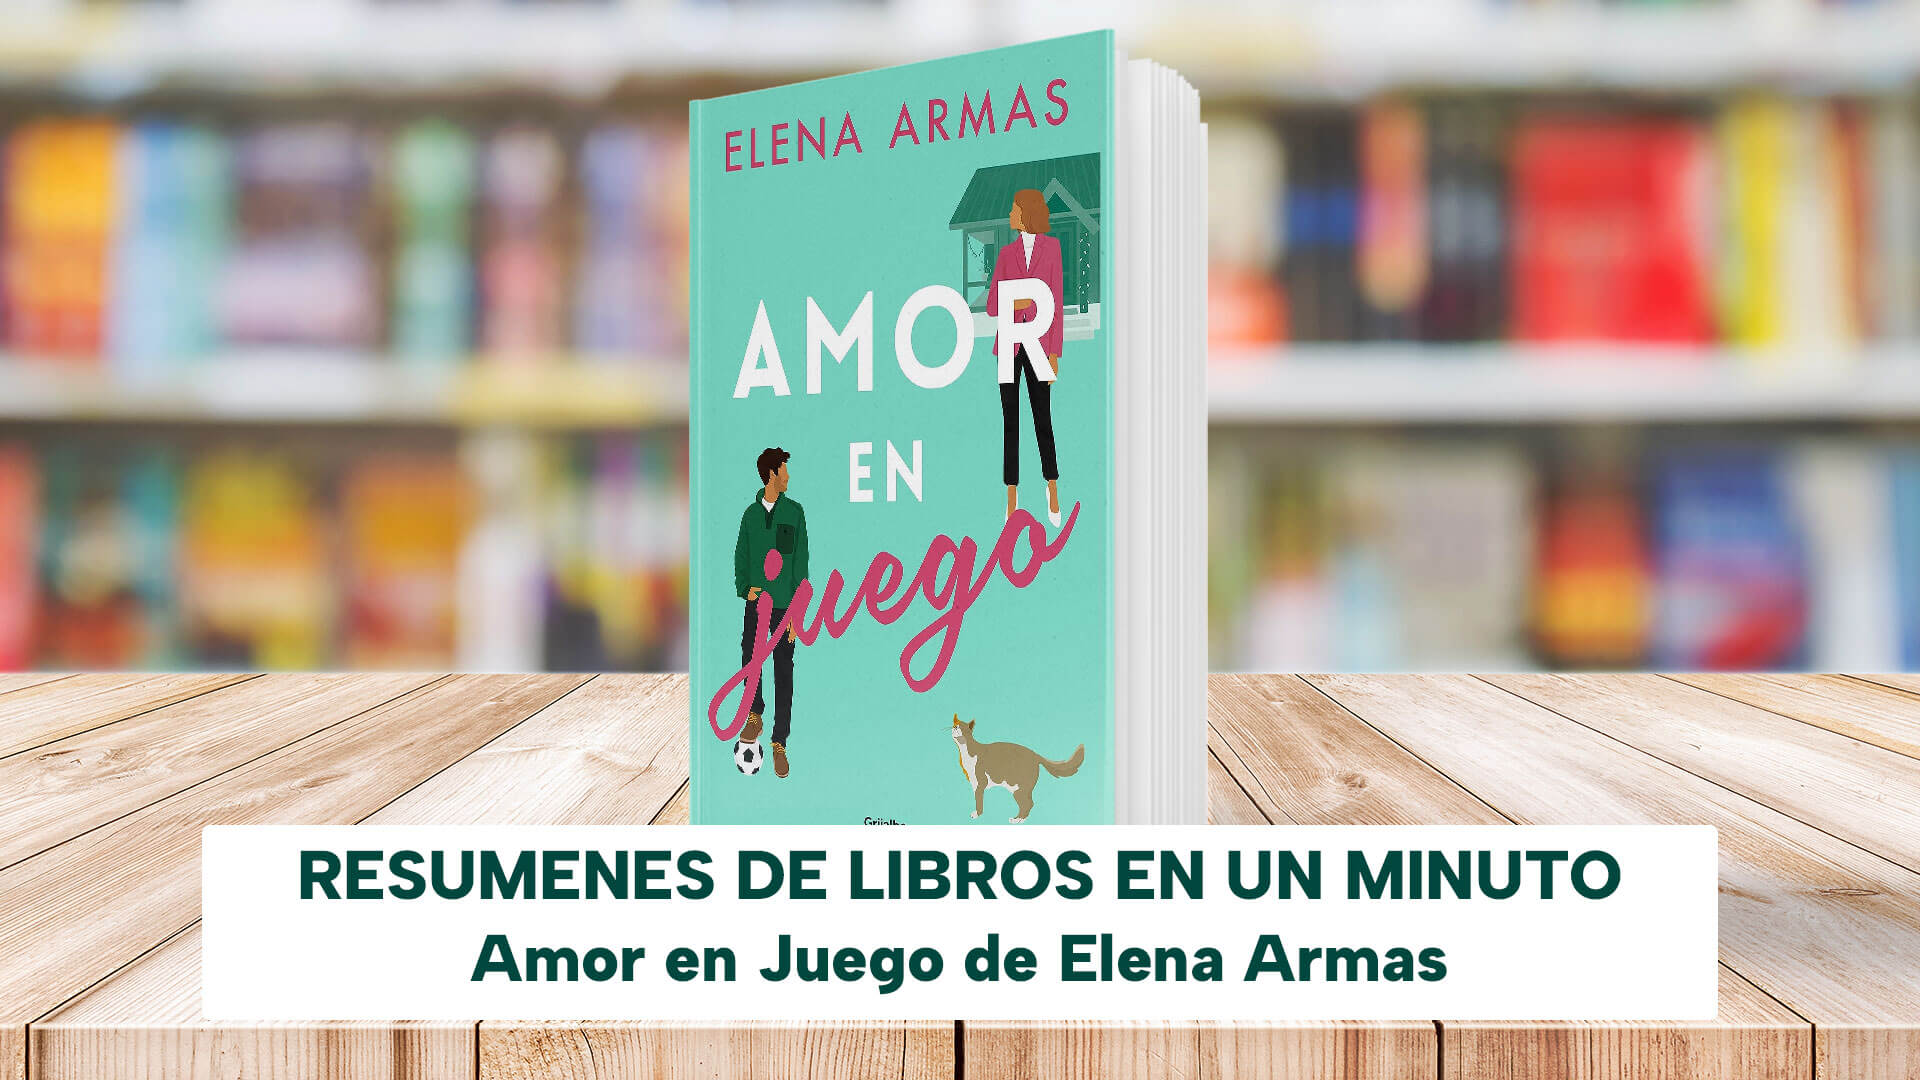 Farsa de amor a la española by Elena Armas, Paperback